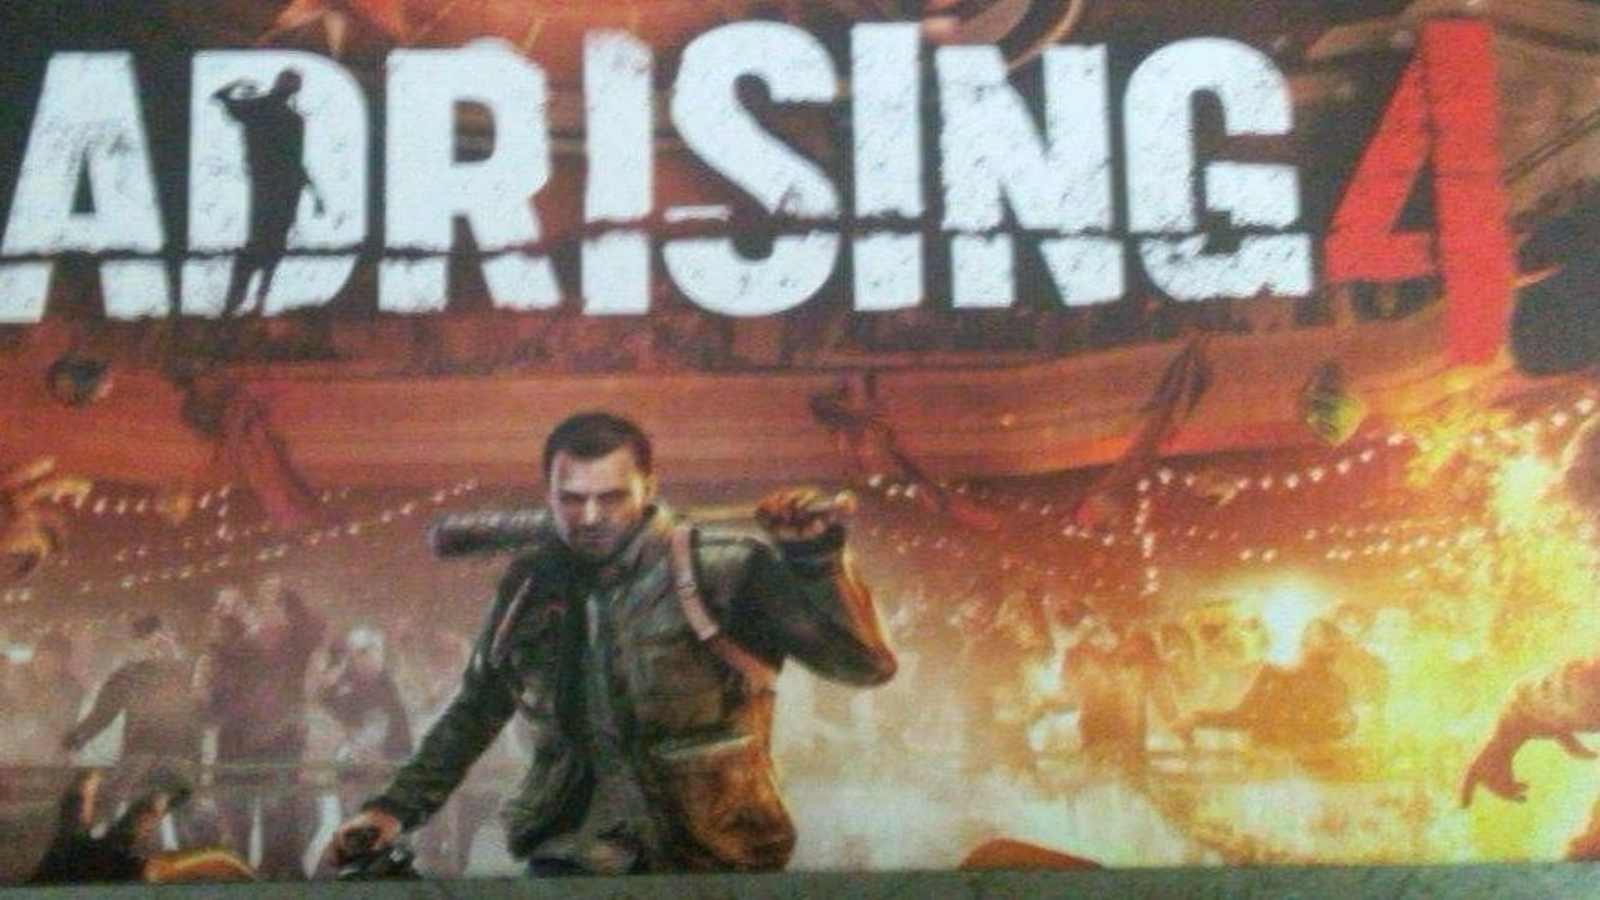 Dead Rising 2 Remake leaked screenshot : r/deadrising